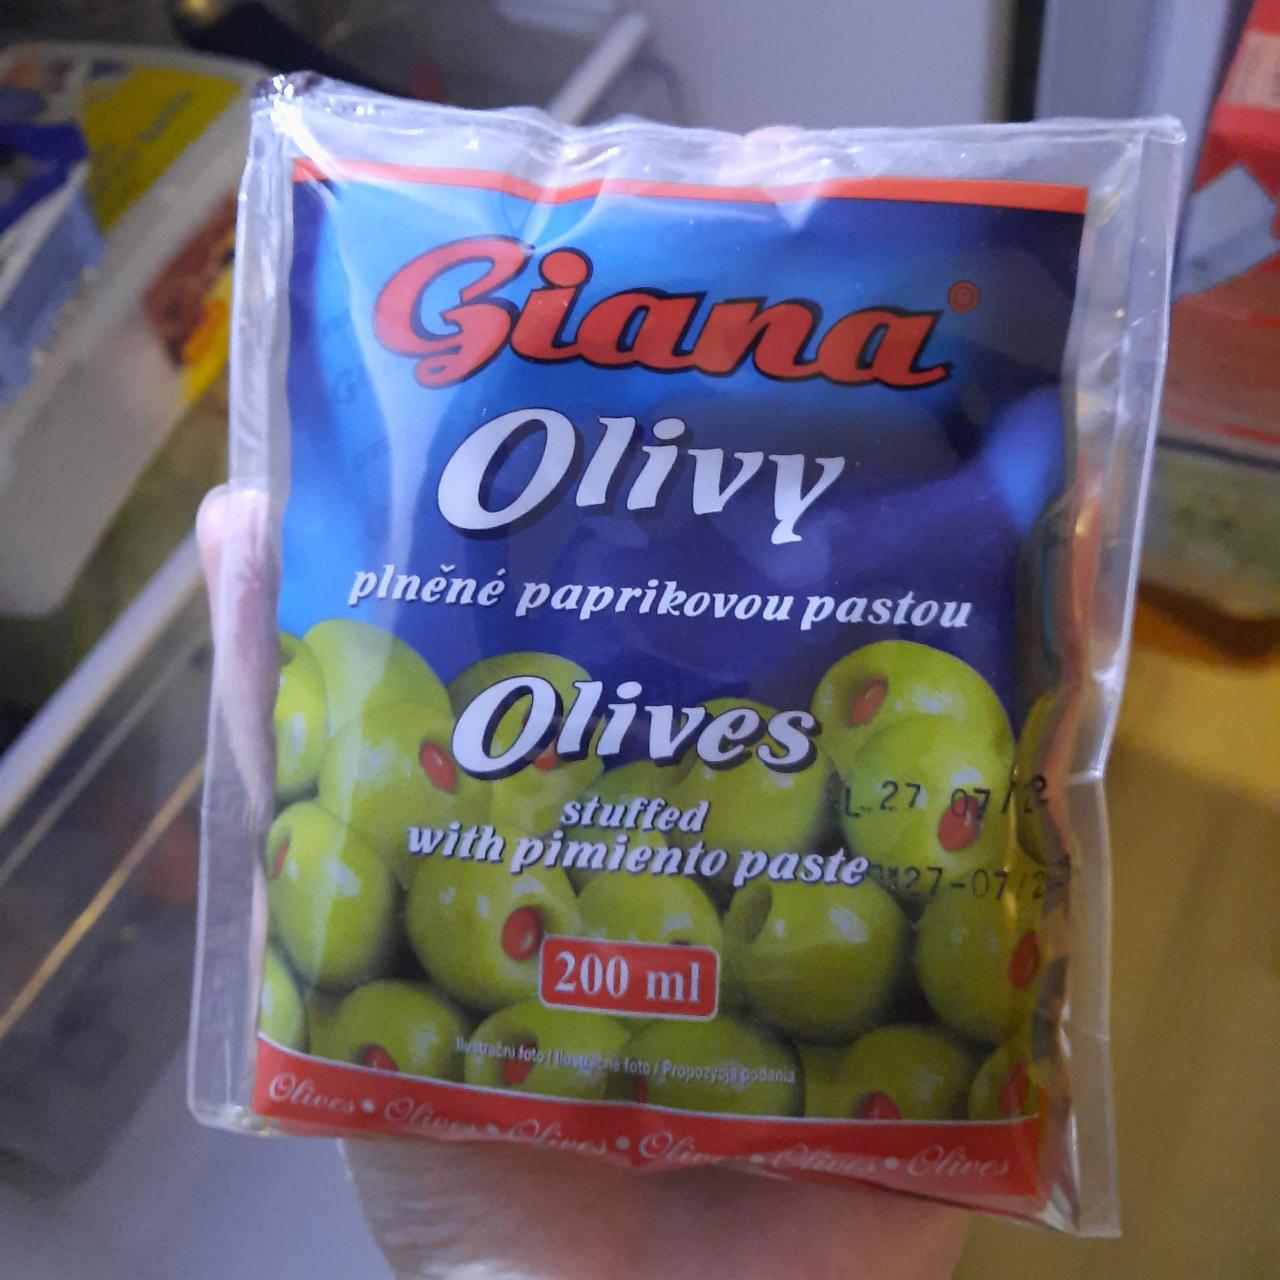 Fotografie - olivy plněné paprikovou pastou Giana